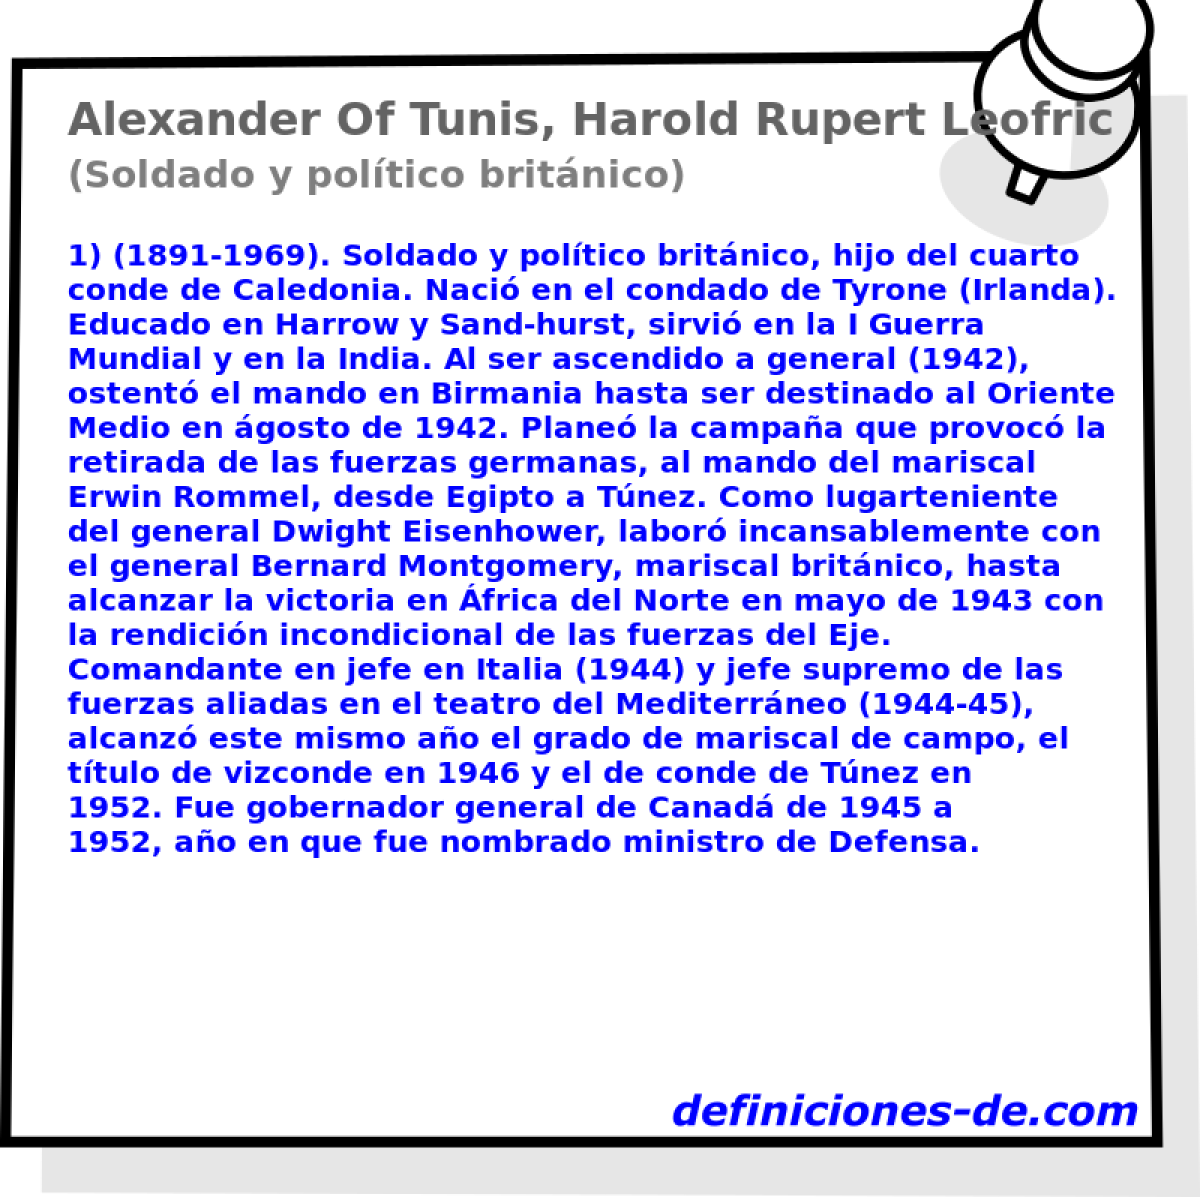 Alexander Of Tunis, Harold Rupert Leofric George, Conde De (Soldado y poltico britnico)